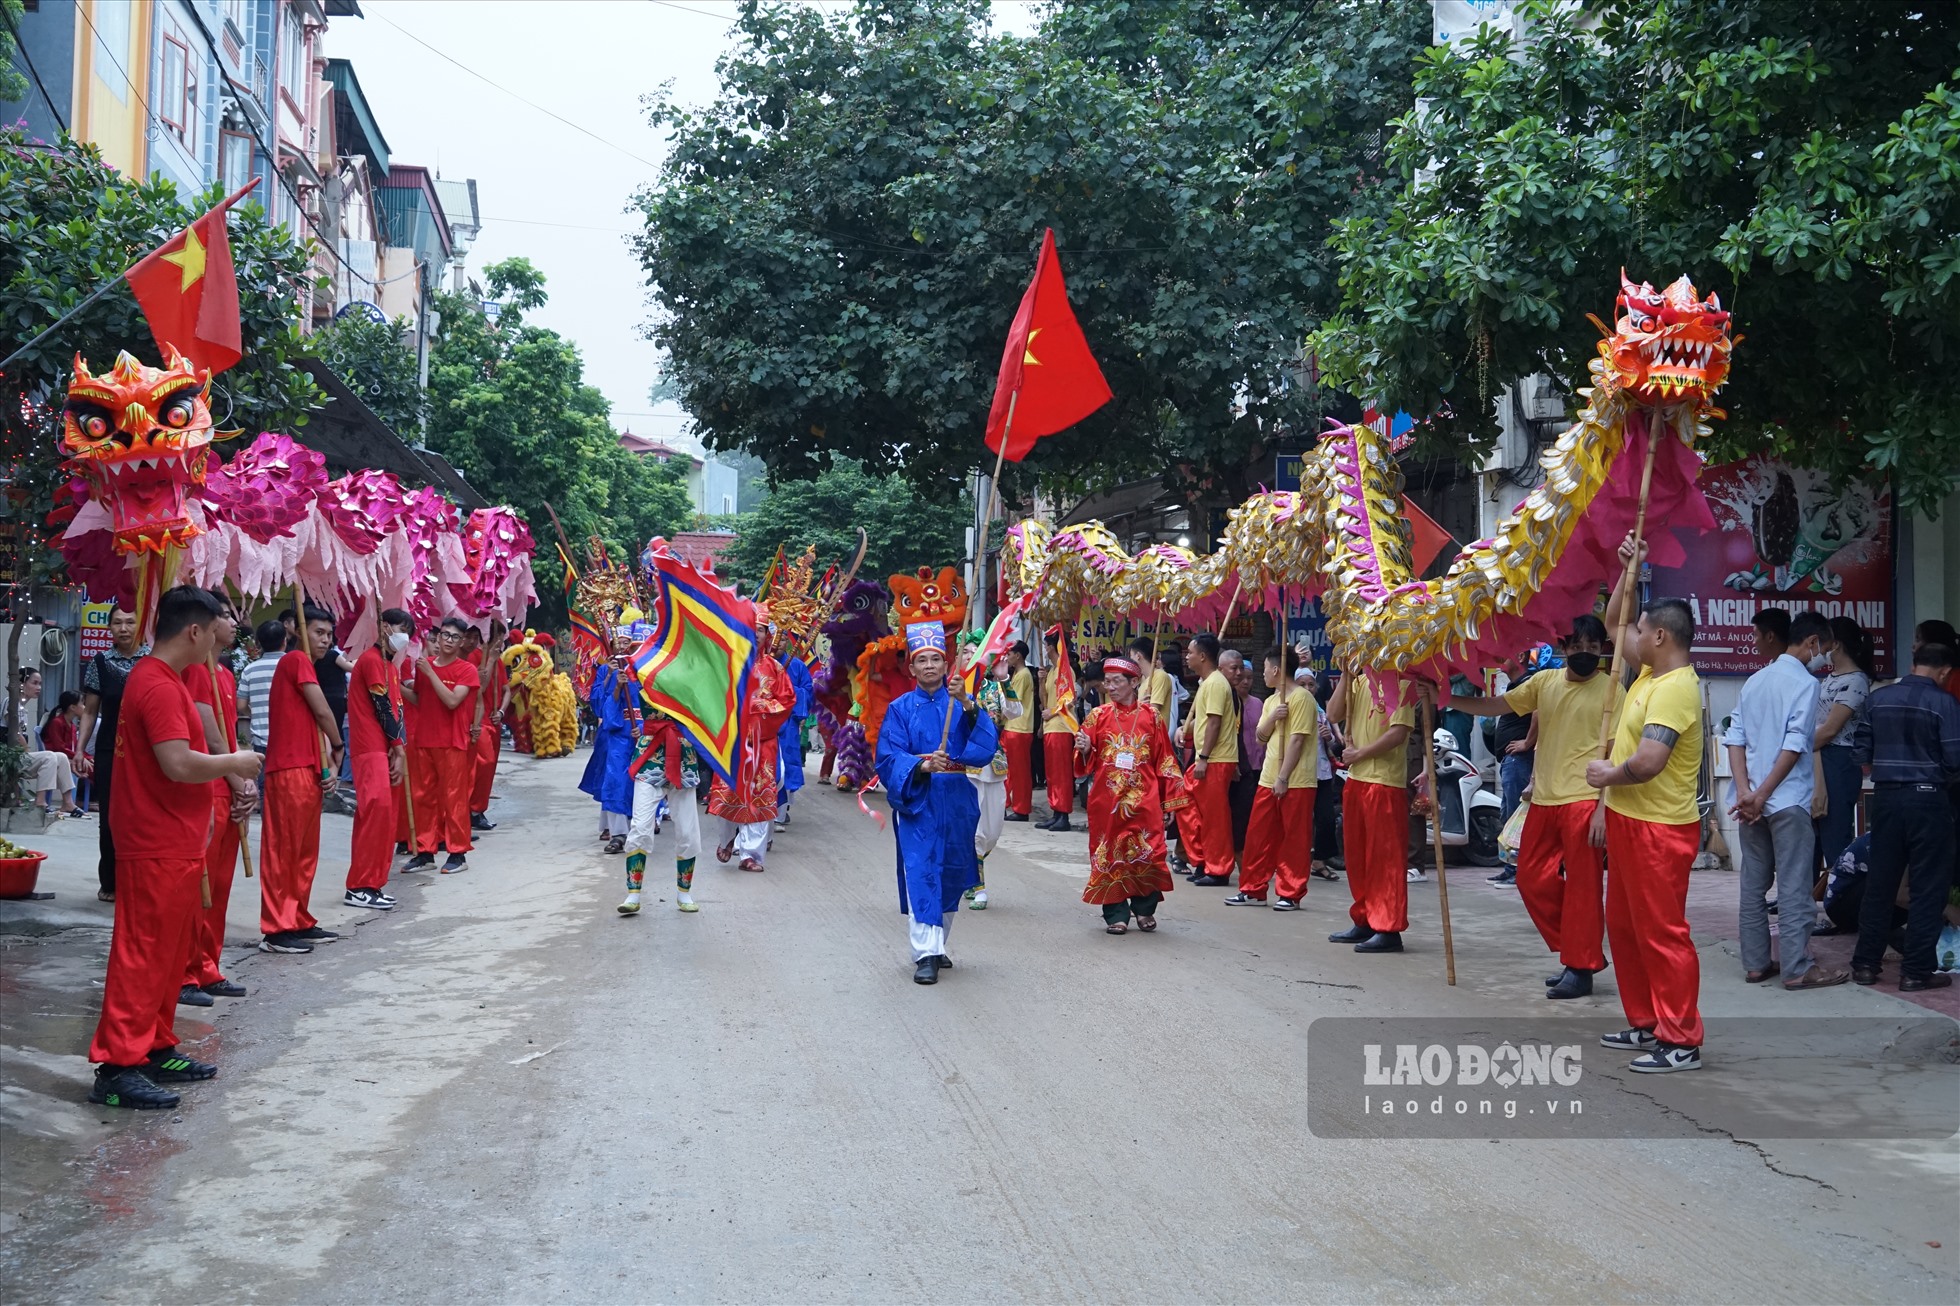 Lễ hội cũng là dịp giới thiệu với du khách nét đẹp văn hóa các dân tộc địa phương, quảng bá về tiềm năng, thế mạnh, thu hút đầu tư vào du lịch văn hóa tâm linh ở Bảo Hà, Bảo Yên nói riêng và Lào Cai nói chung.